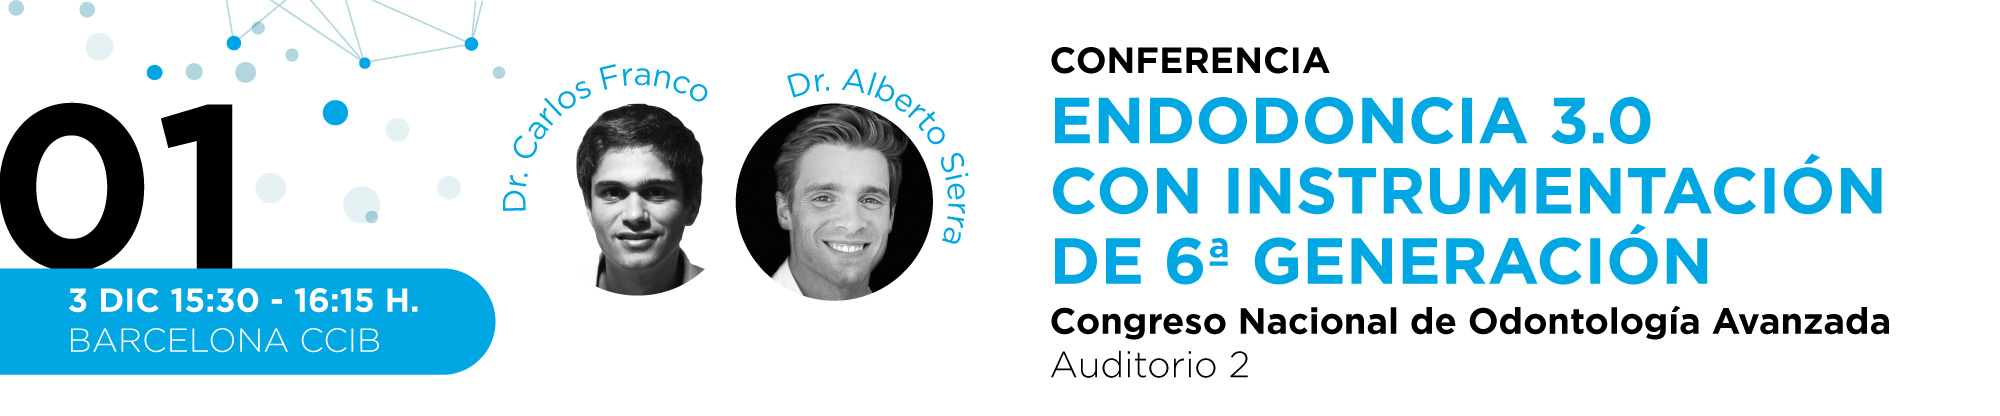 conferencia-endodoncia-patrocinada-por-zarc4endo